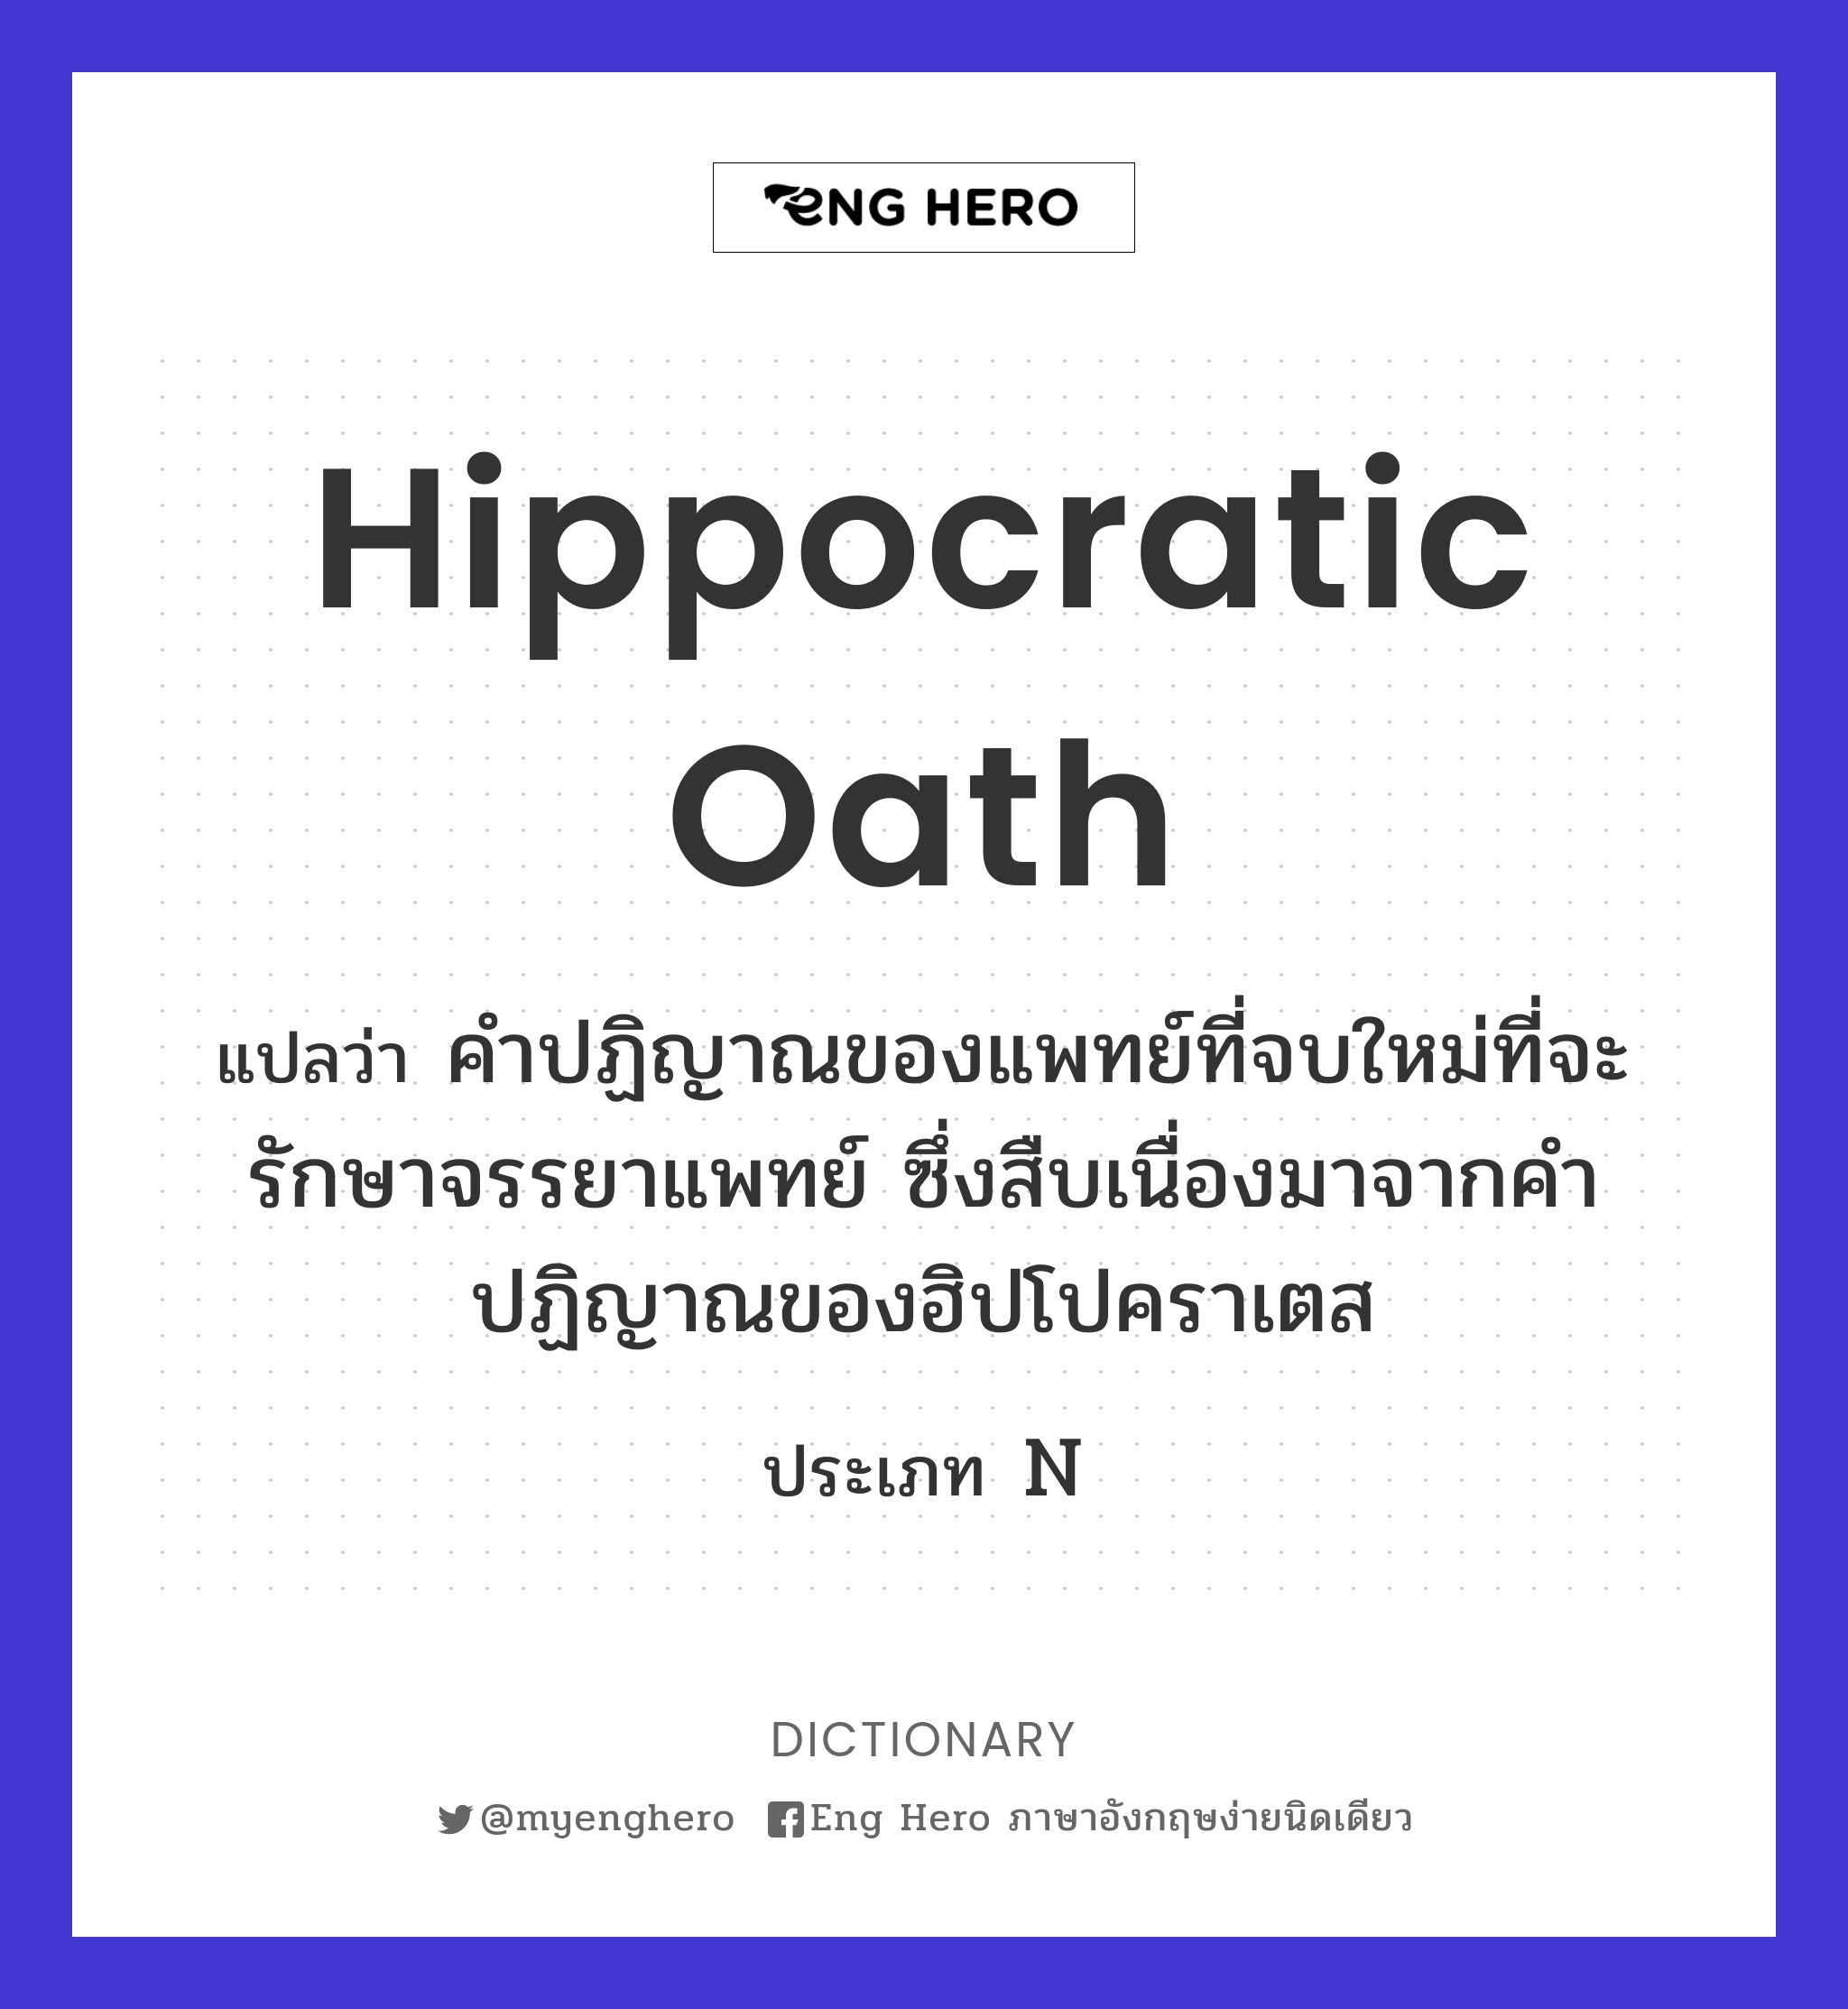 Hippocratic oath